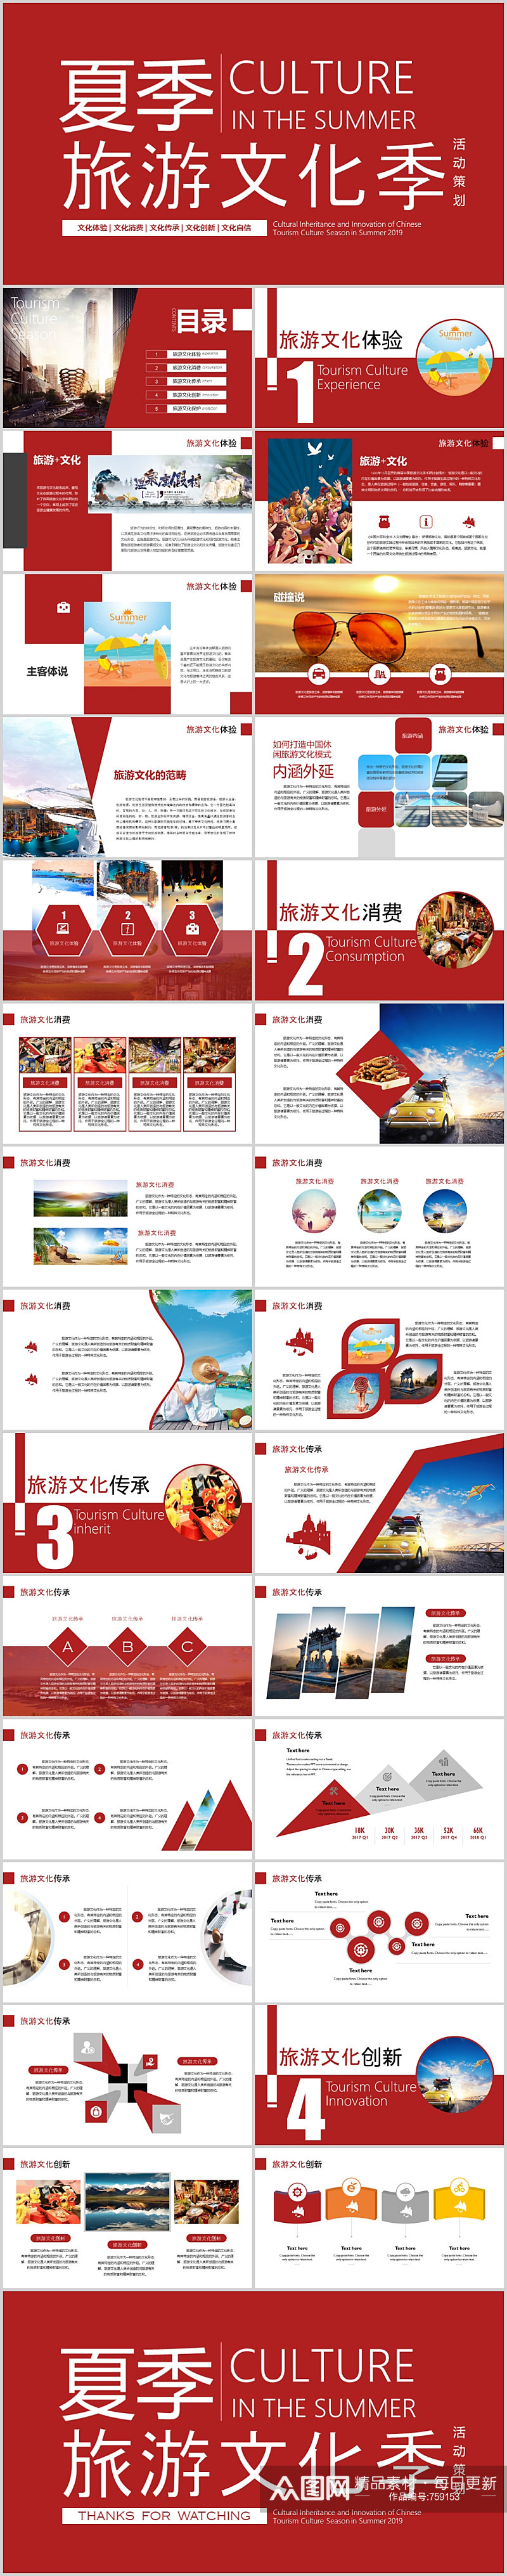 红色夏季旅游文化季活动策划报告素材